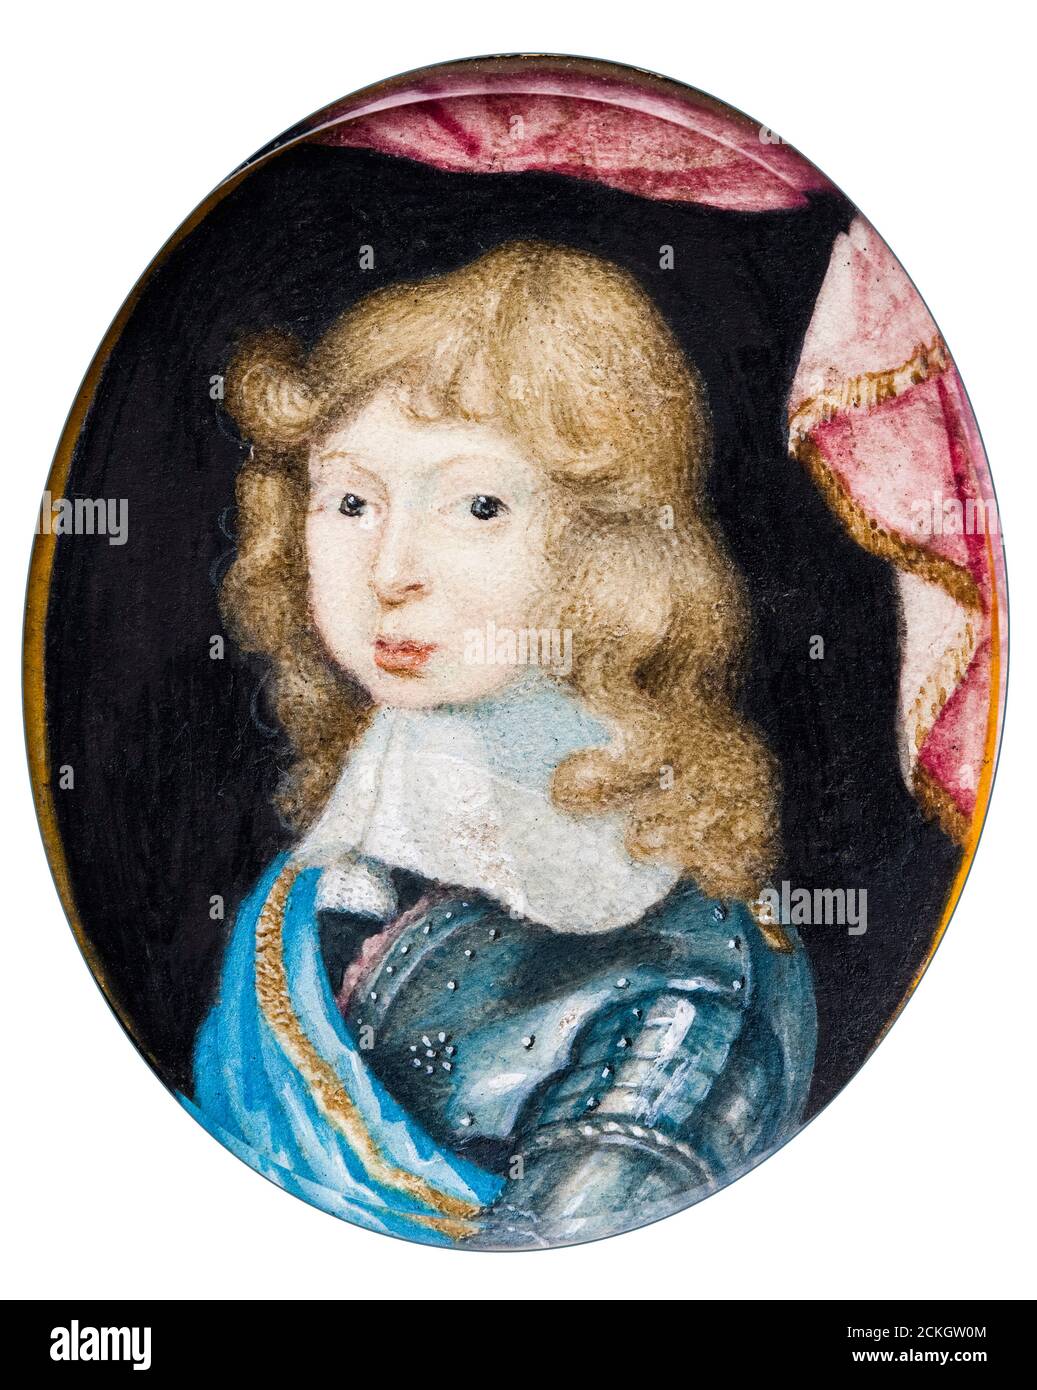 Carlo XI (1655-1697), re di Svezia, da bambino, ritratto in miniatura di Pierre Signac, circa 1662 Foto Stock